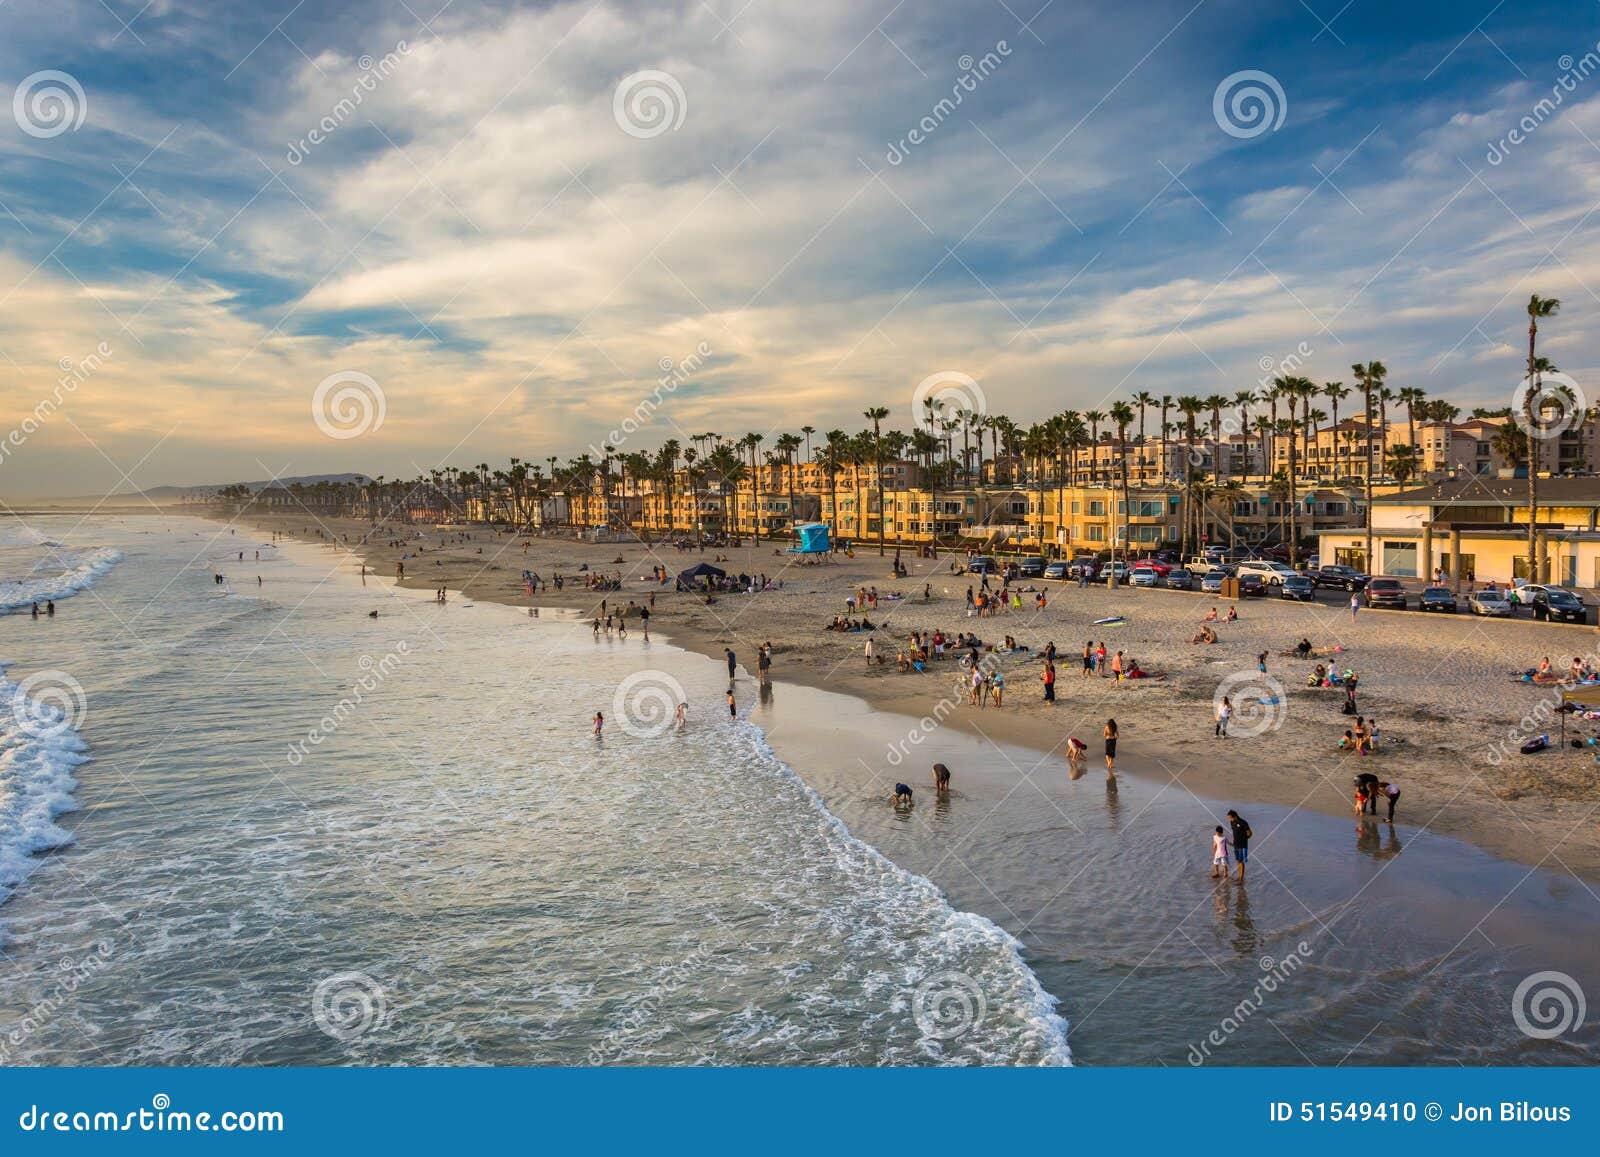 2,800+ Oceanside California Photos Stock Photos, Pictures